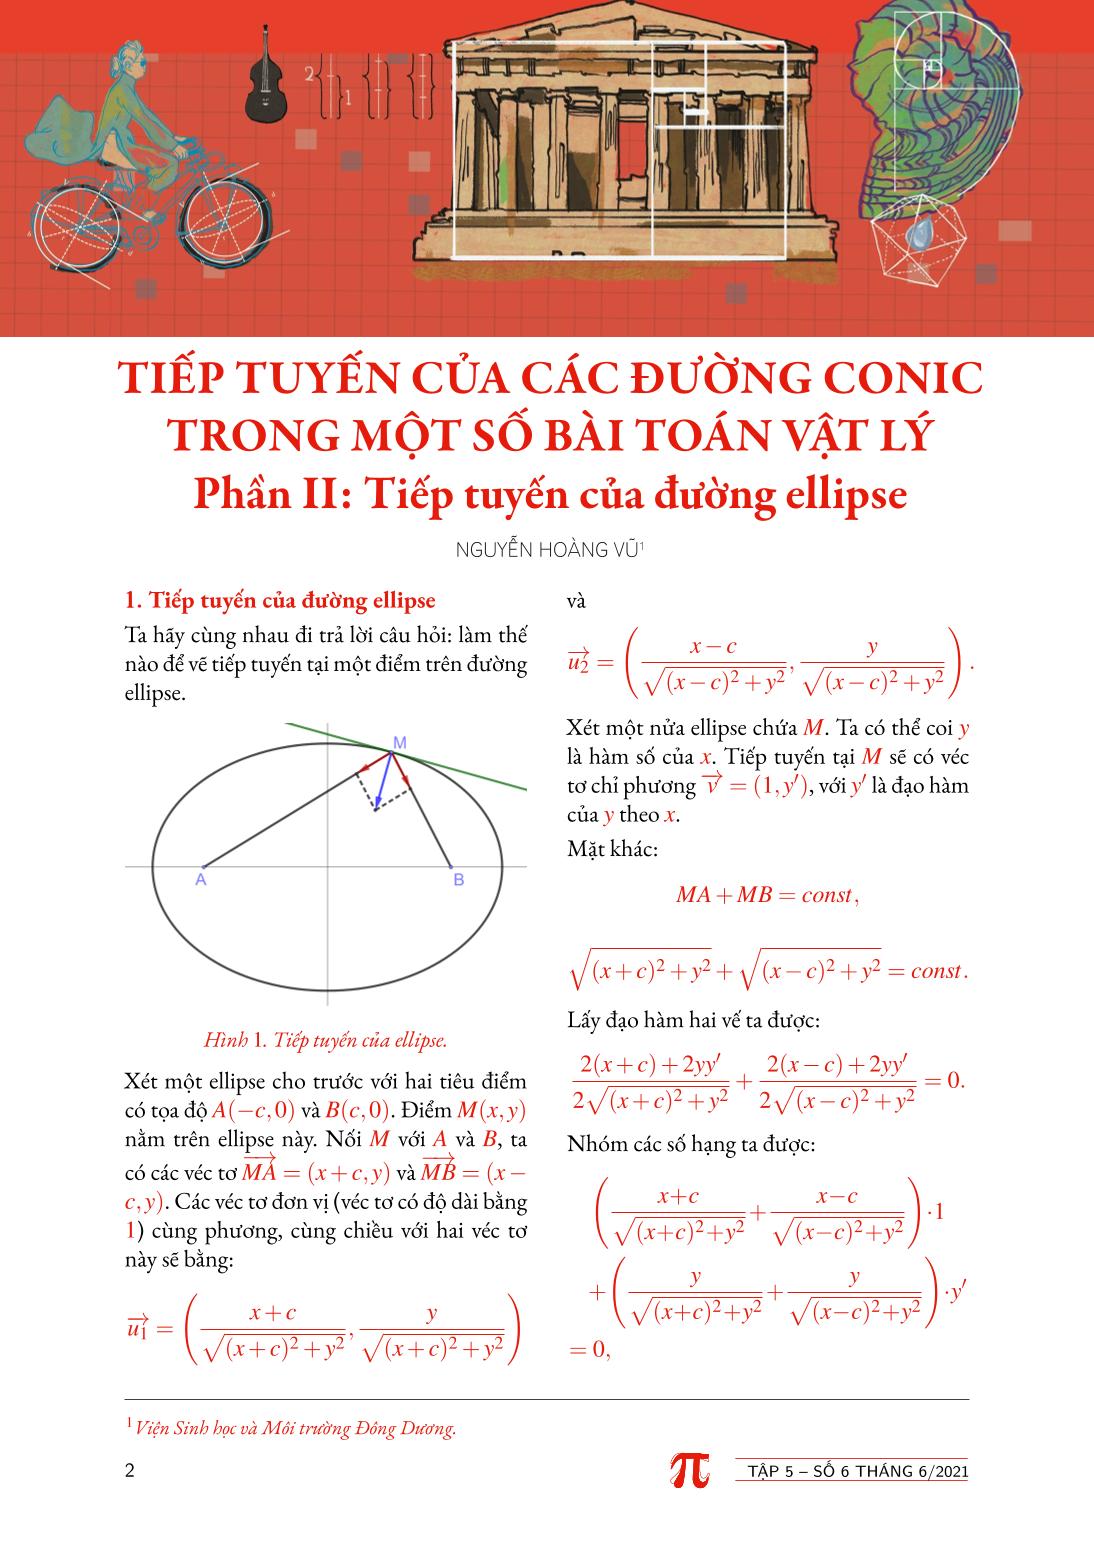 Tạp chí Pi- Hội Toán học Việt Nam số 6/ tháng 6 năm 2021